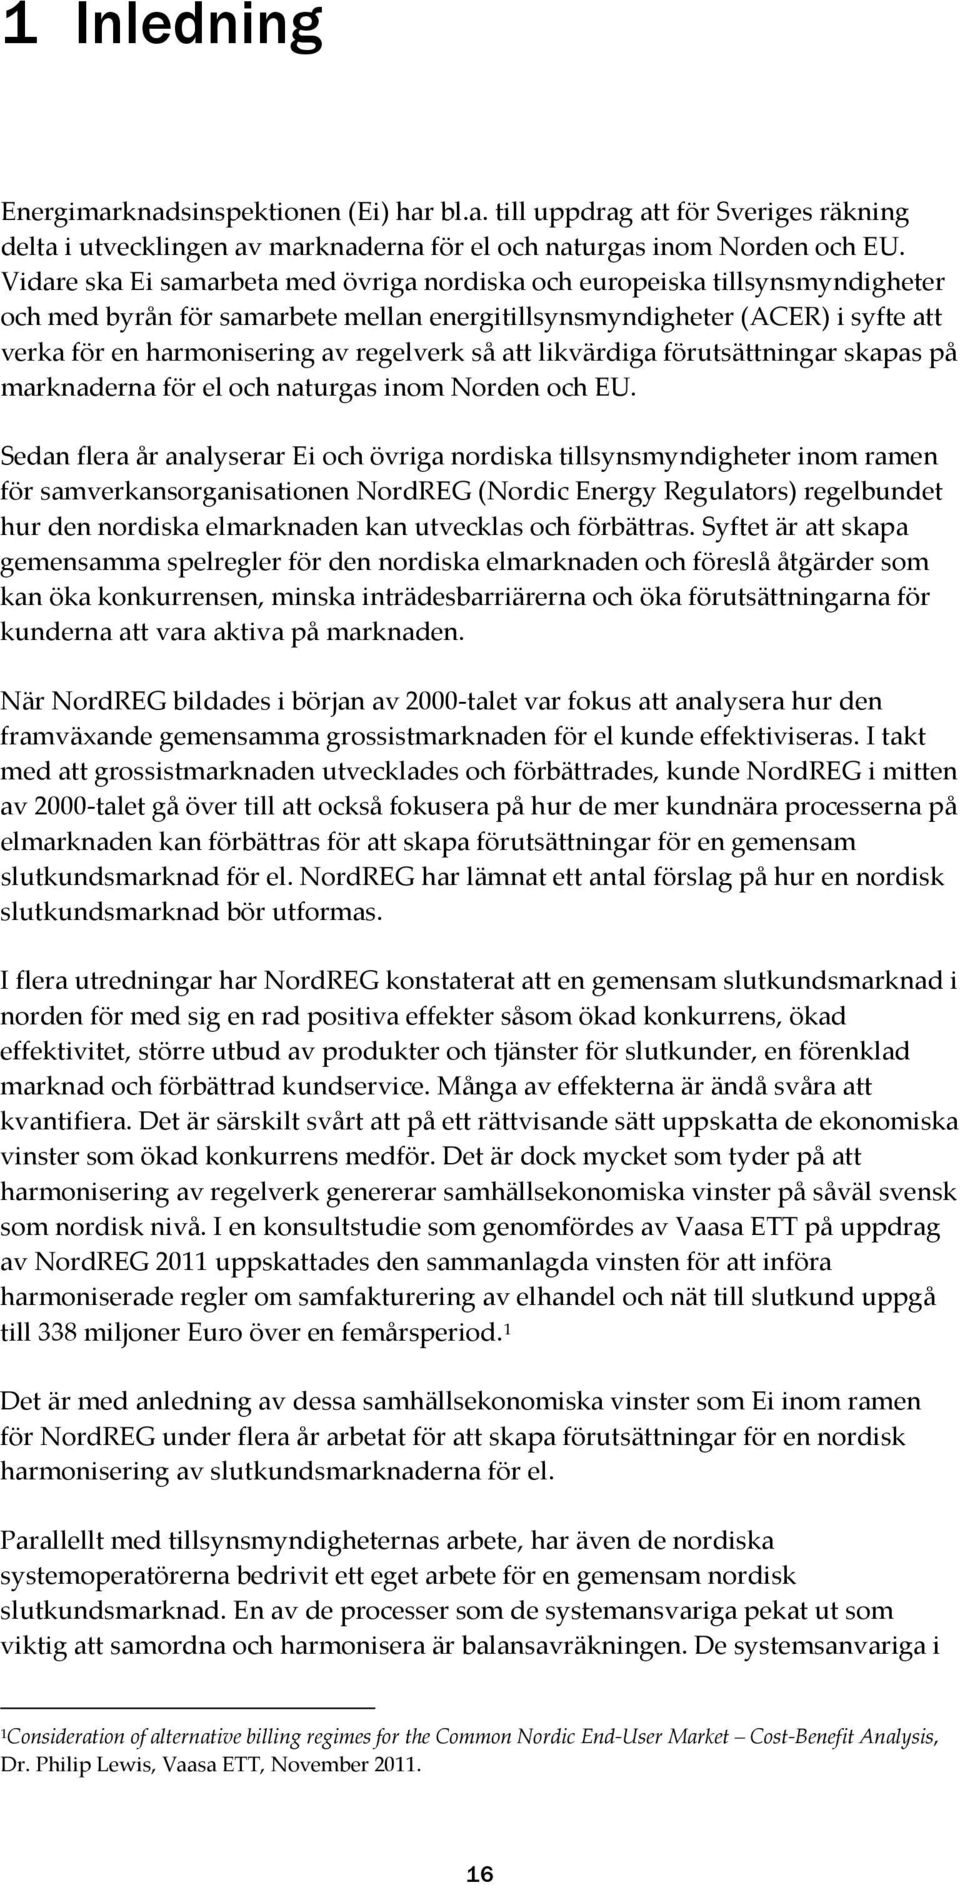 så att likvärdiga förutsättningar skapas på marknaderna för el och naturgas inom Norden och EU.